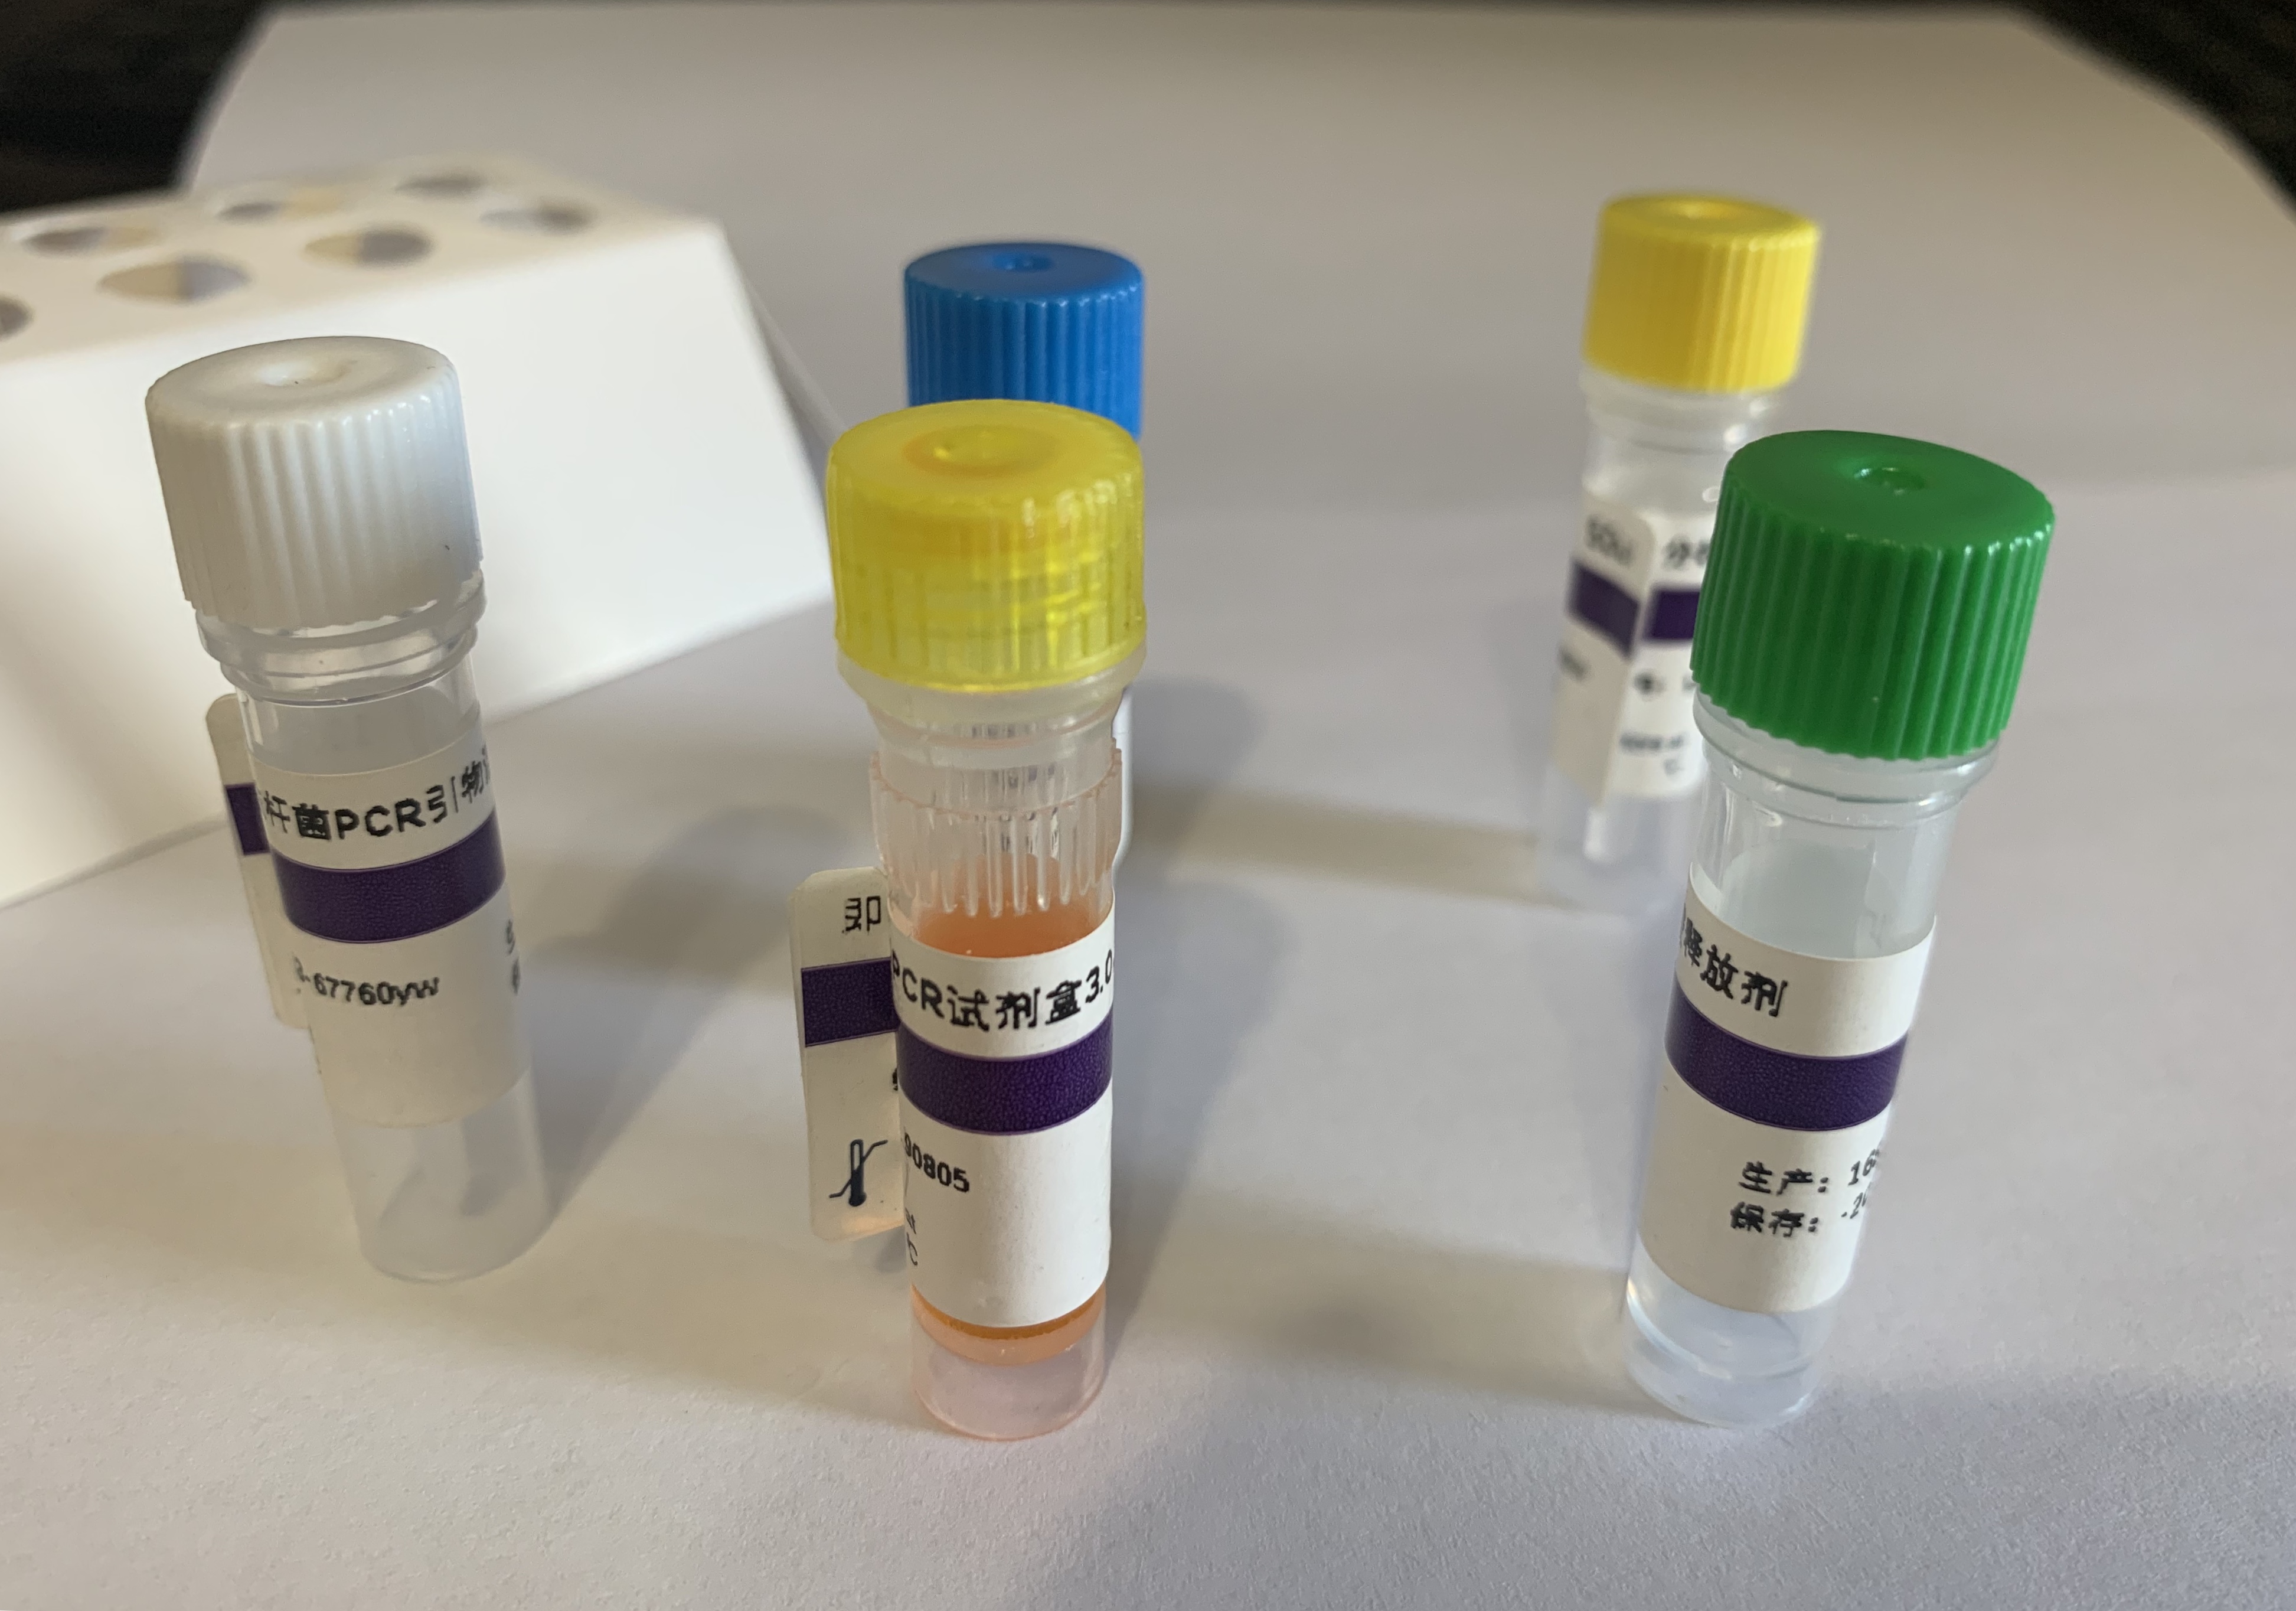 超广谱β-内酰胺酶大肠埃希菌PCR试剂盒